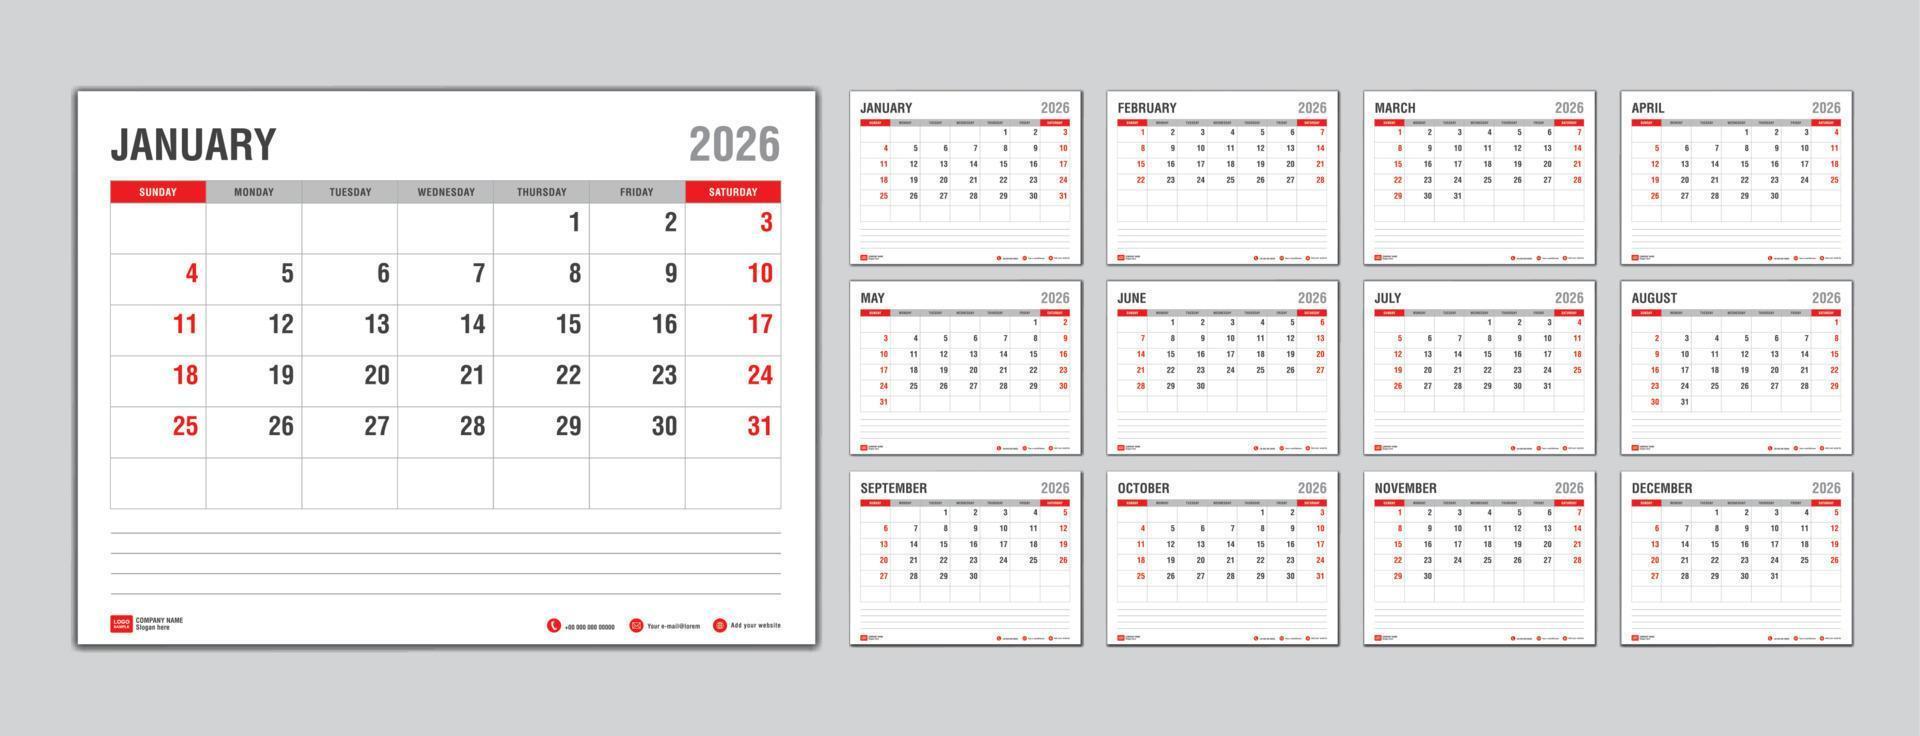 modèle de calendrier mensuel pour l'année 2026, la semaine commence le dimanche, planificateur de l'année 2026, calendrier mural dans un style minimaliste, modèle de calendrier de bureau 2026, conception de calendrier de nouvel an, vecteur de modèle d'entreprise